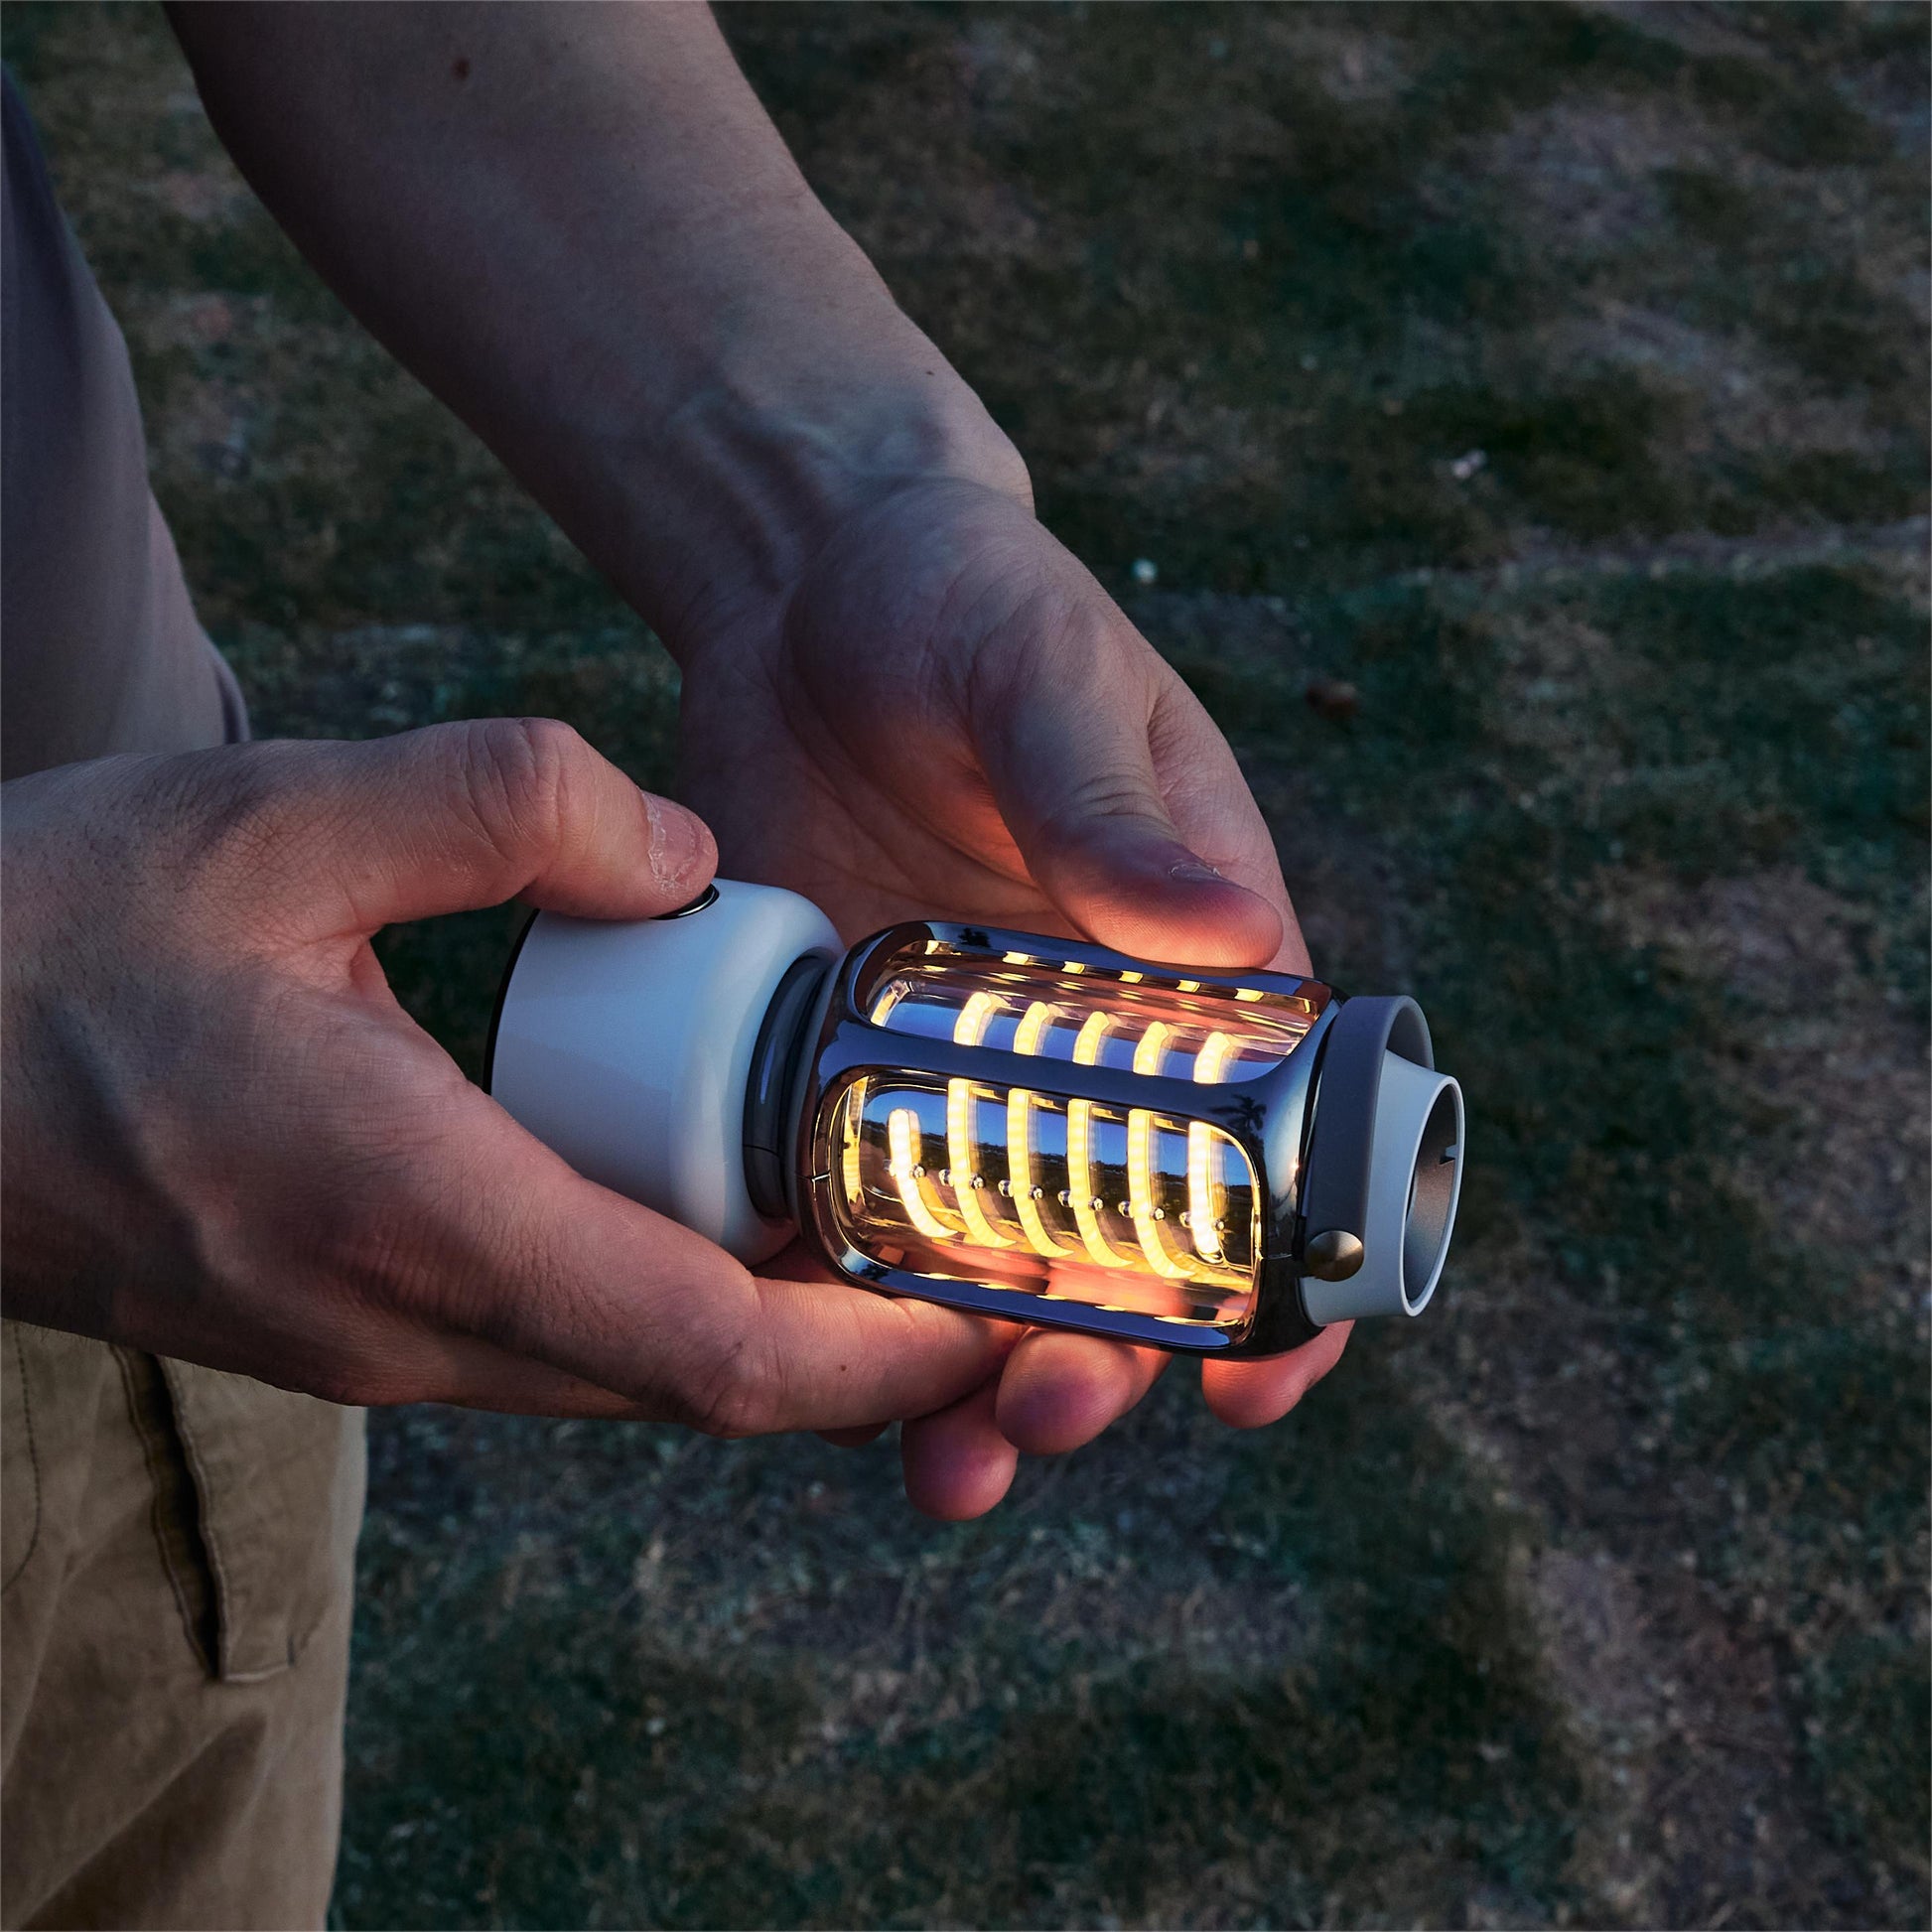 Lumos camping lantern